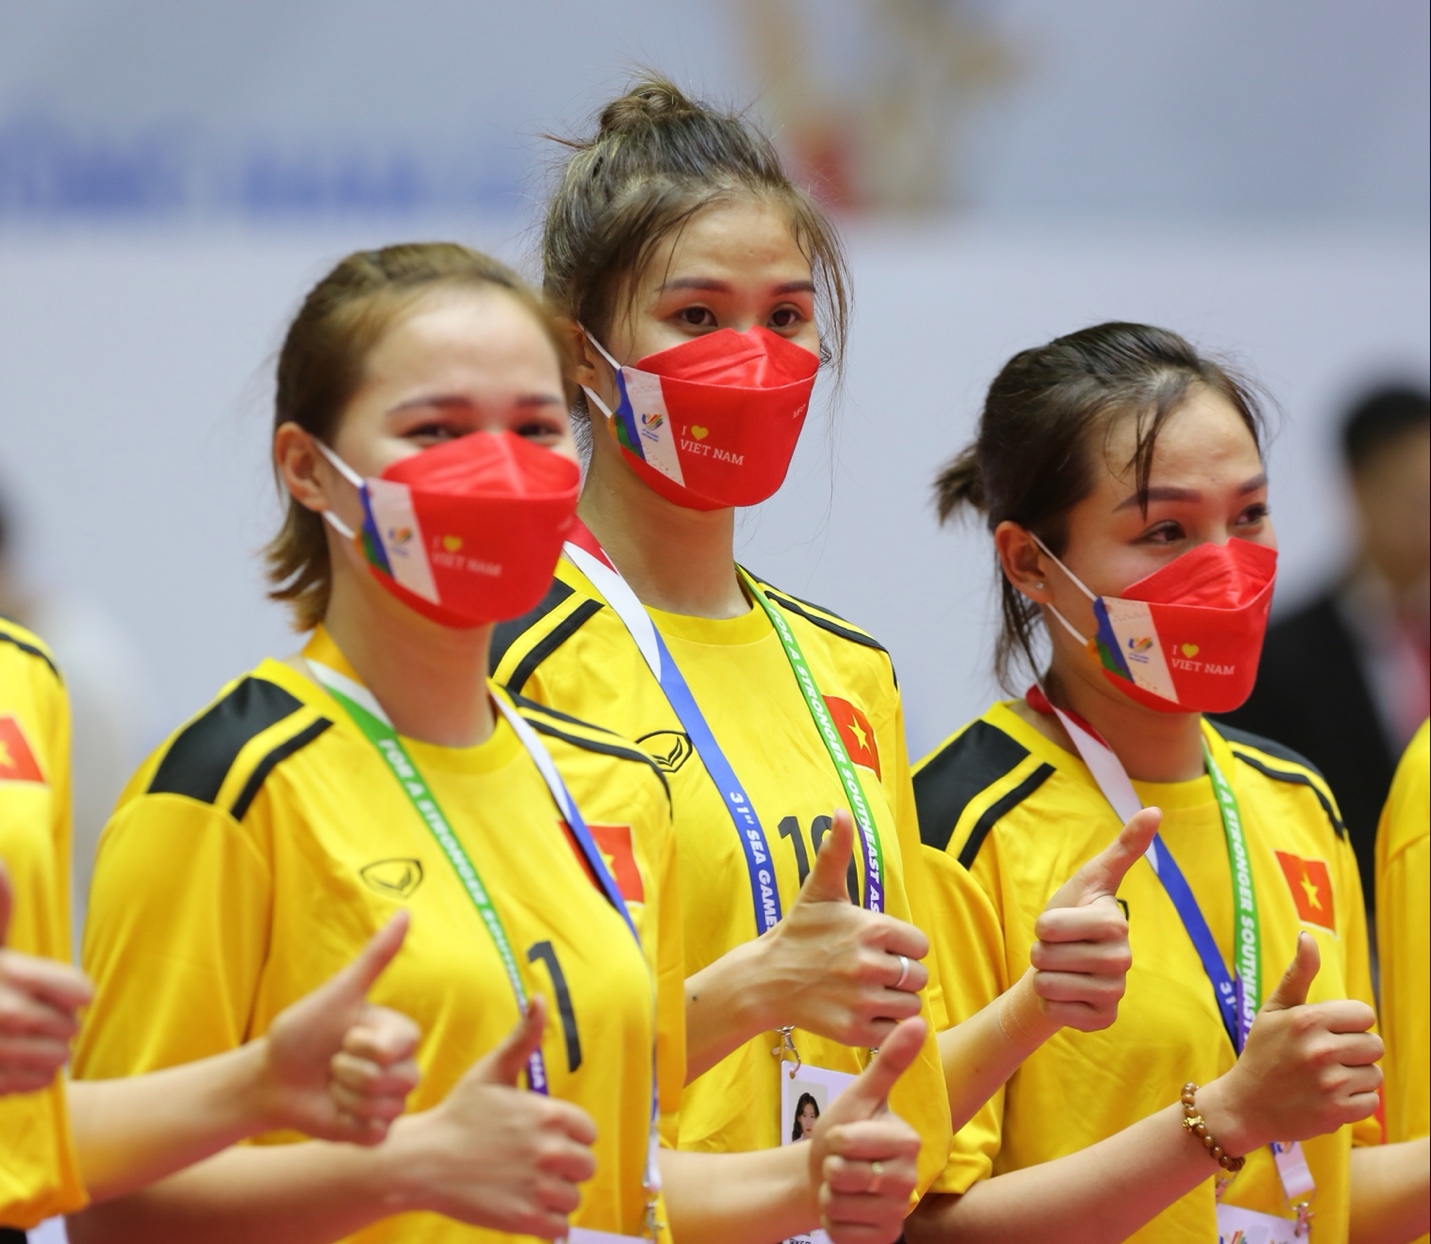 Giành huy chương vàng nhảy xa, VĐV Nguyễn Tiến Trọng cầu hôn bạn gái đội tuyển cầu mây - Ảnh 2.